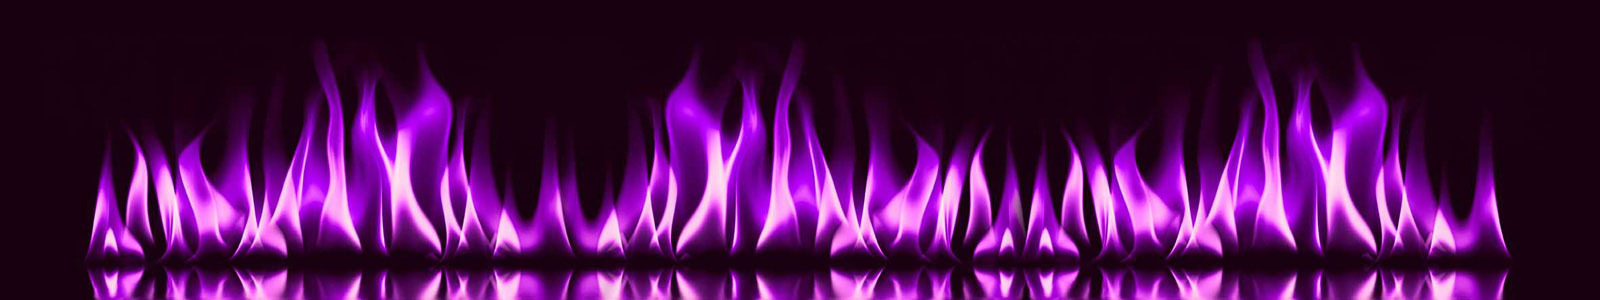 №4656 - Фиолетовое пламя на темном фоне